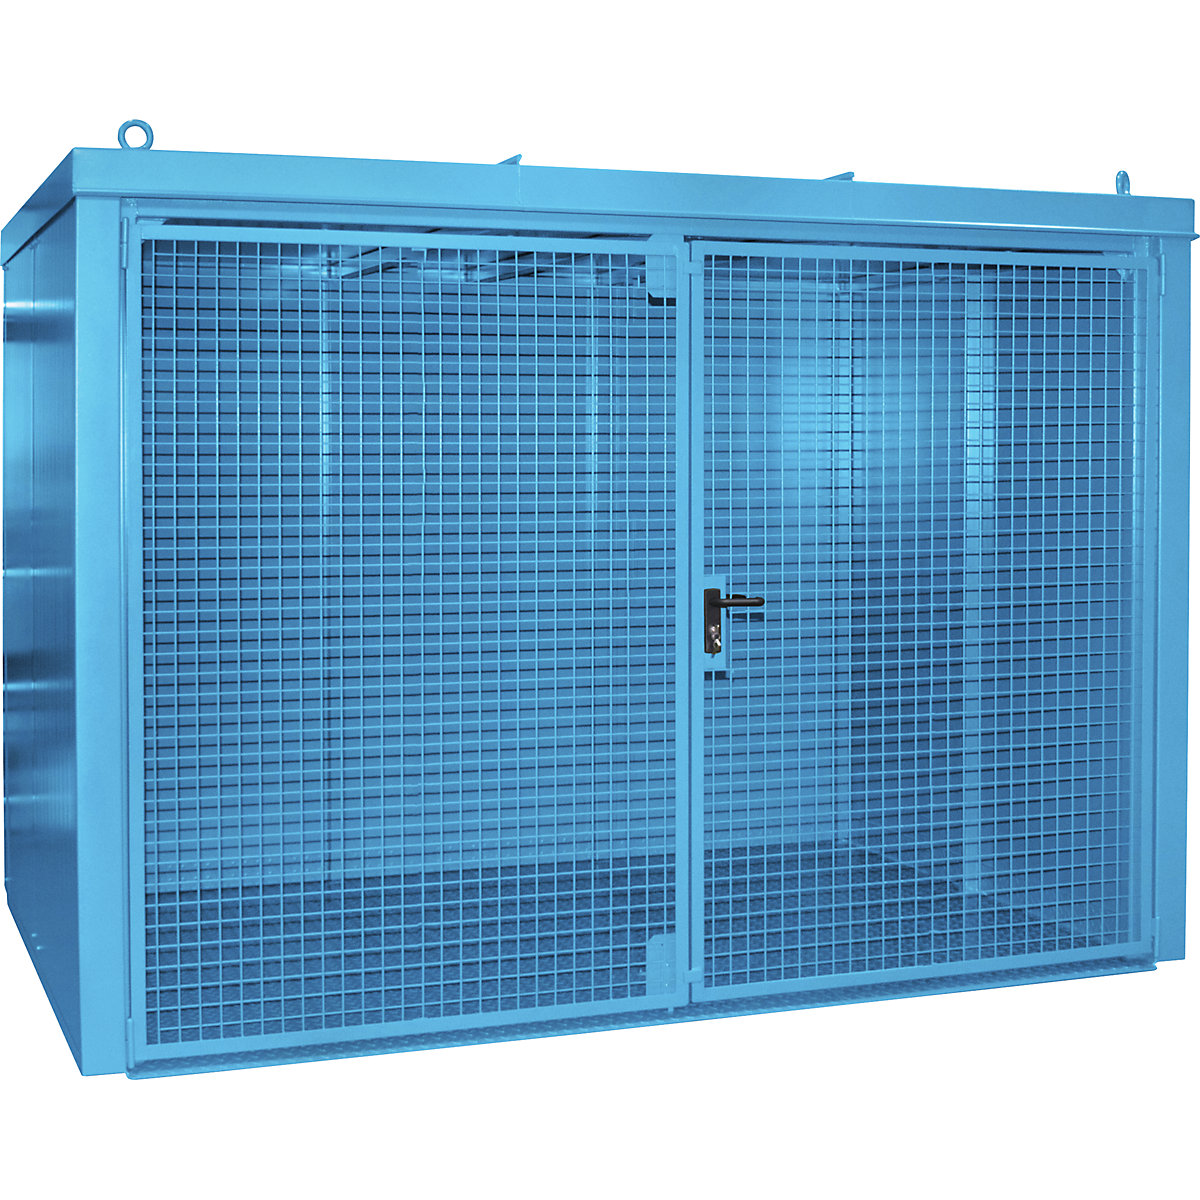 Container pentru butelii de gaz, ignifug – eurokraft pro, pentru 96 butelii cu Ø 230 mm, albastru-5